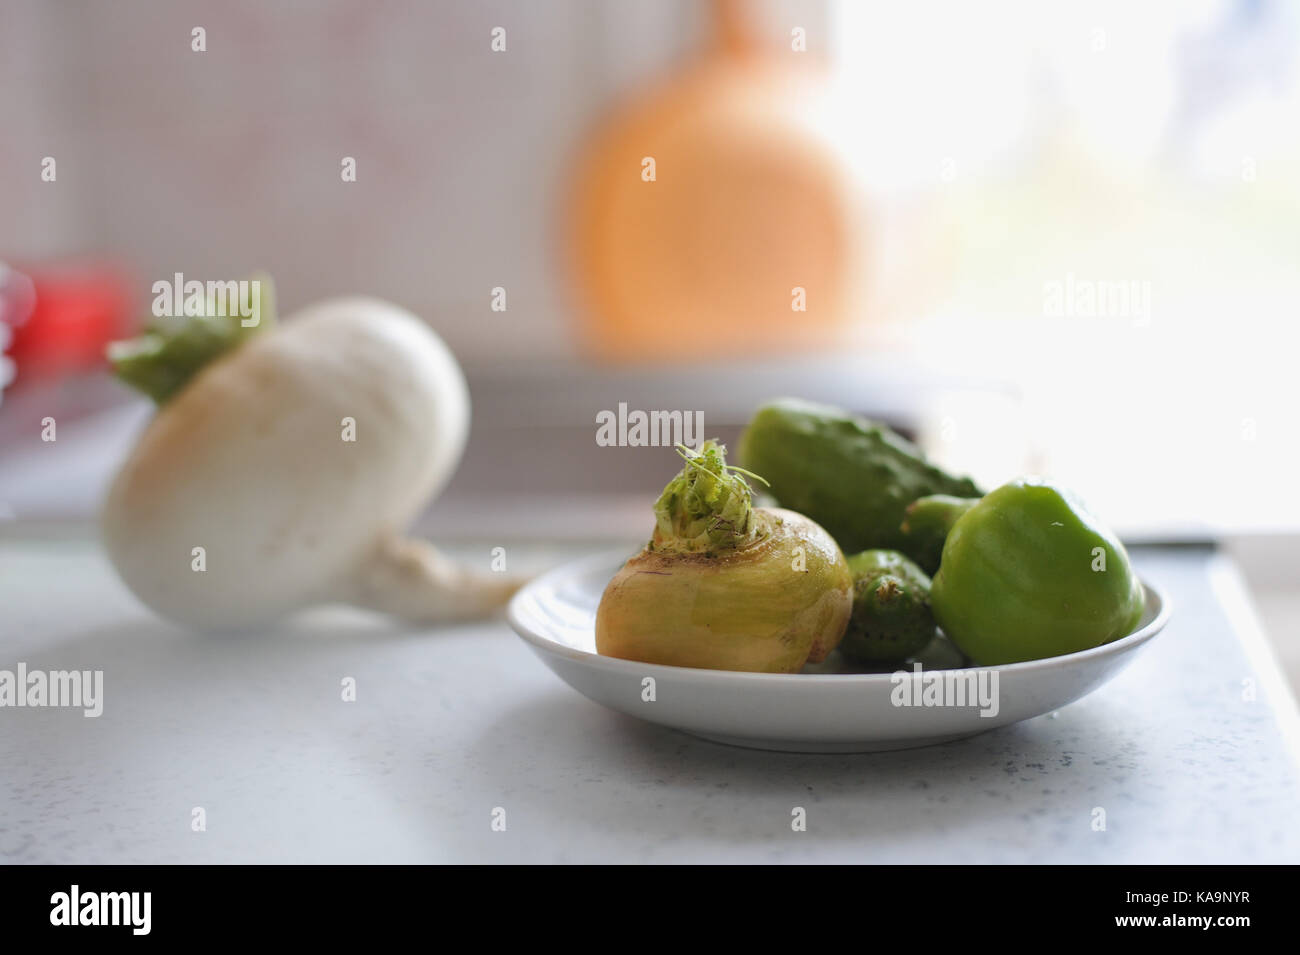 Raccolto fresco di verdure sul tavolo della cucina Foto Stock